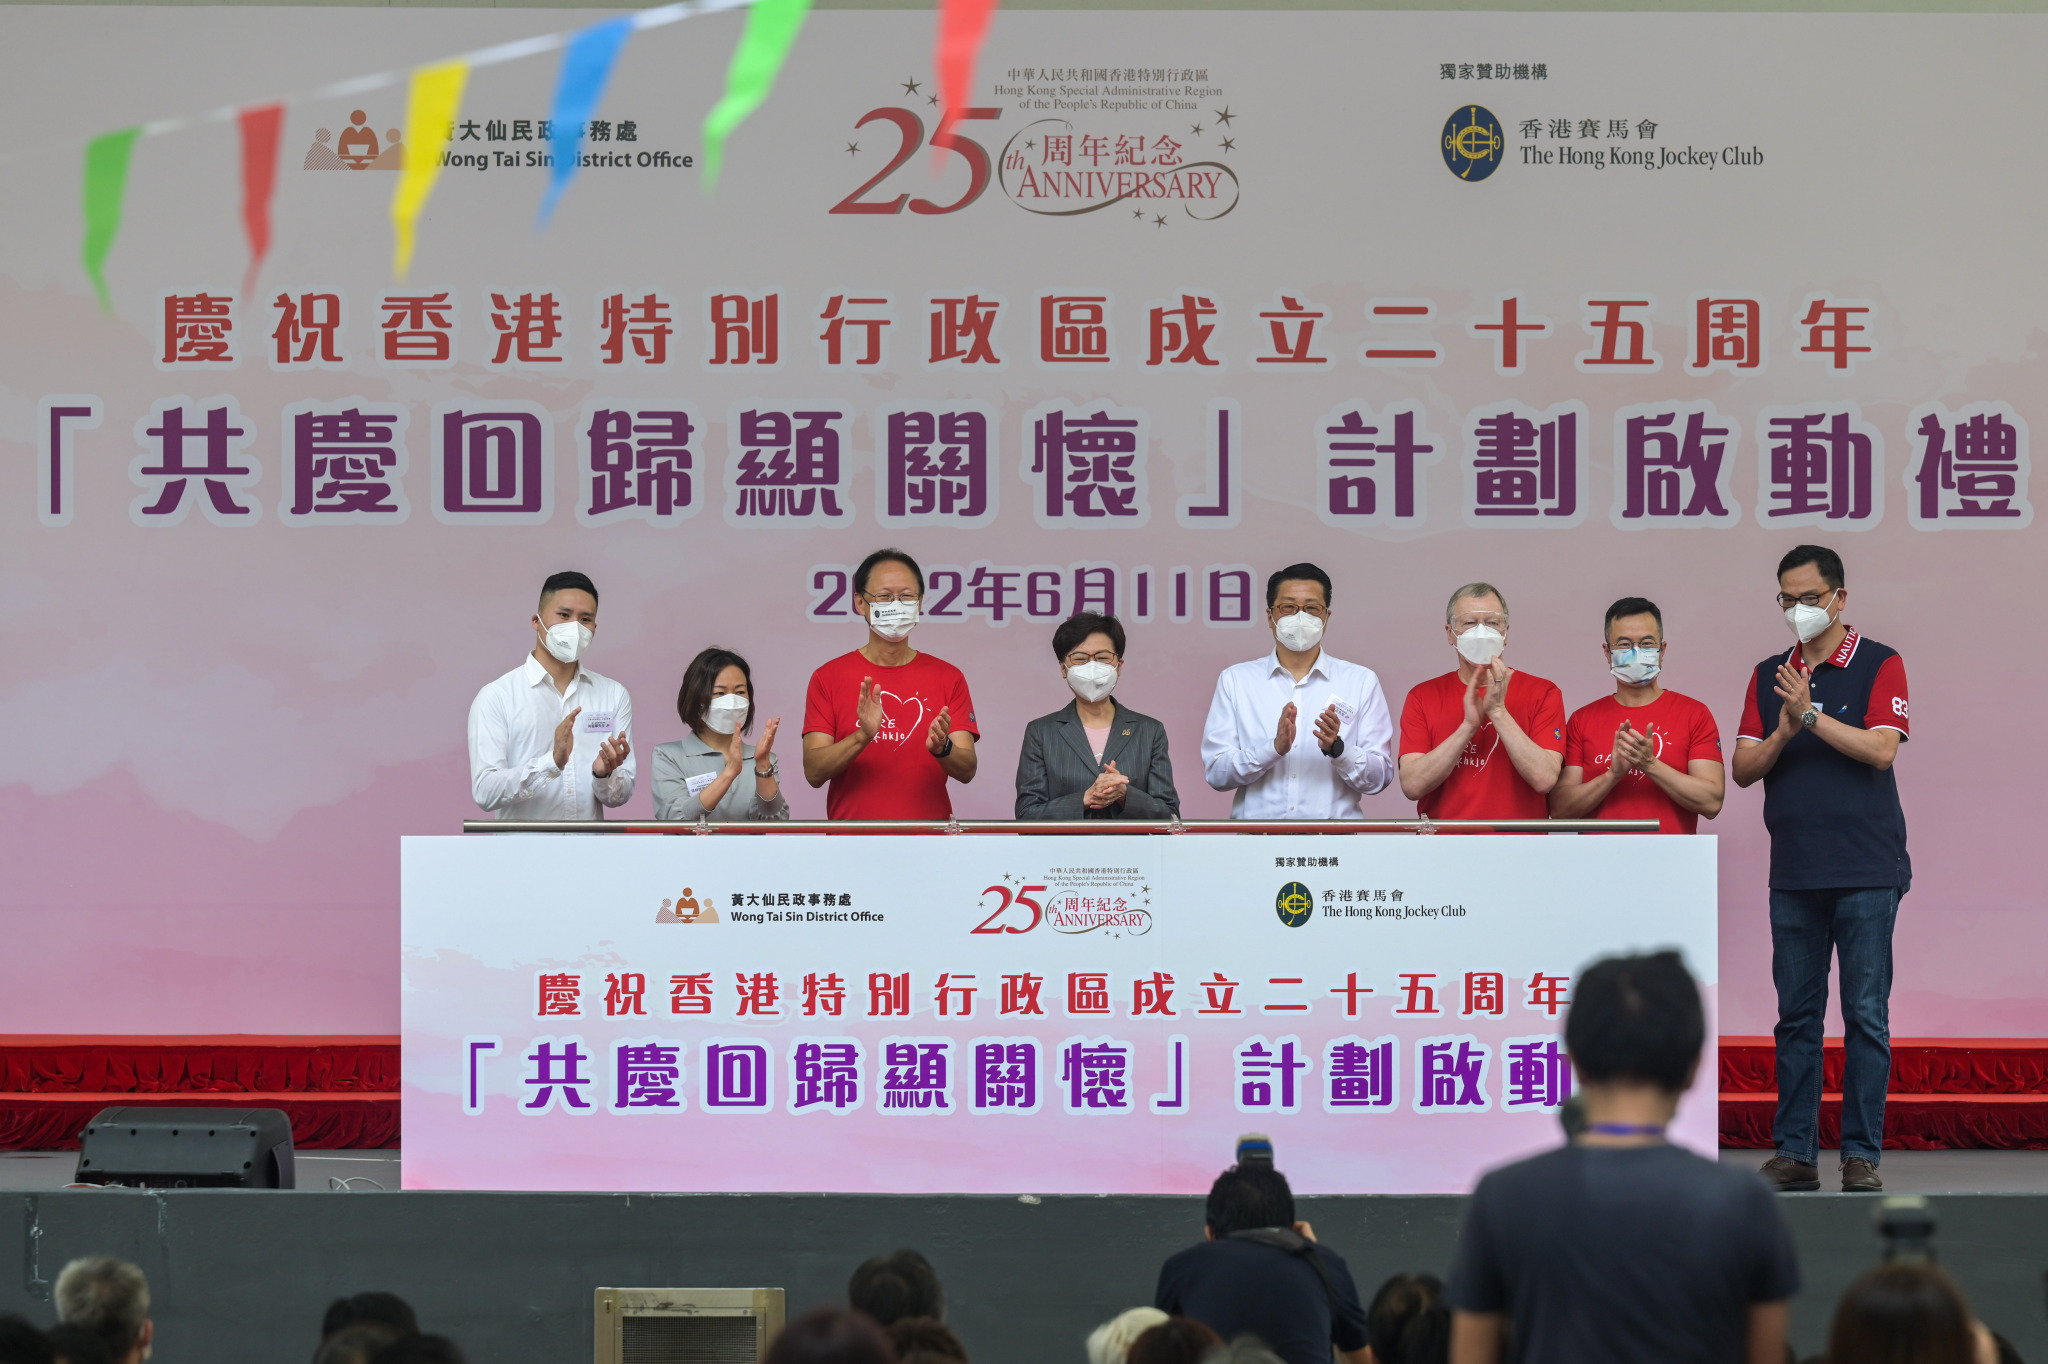 香港启动“共庆回归显关怀”计划